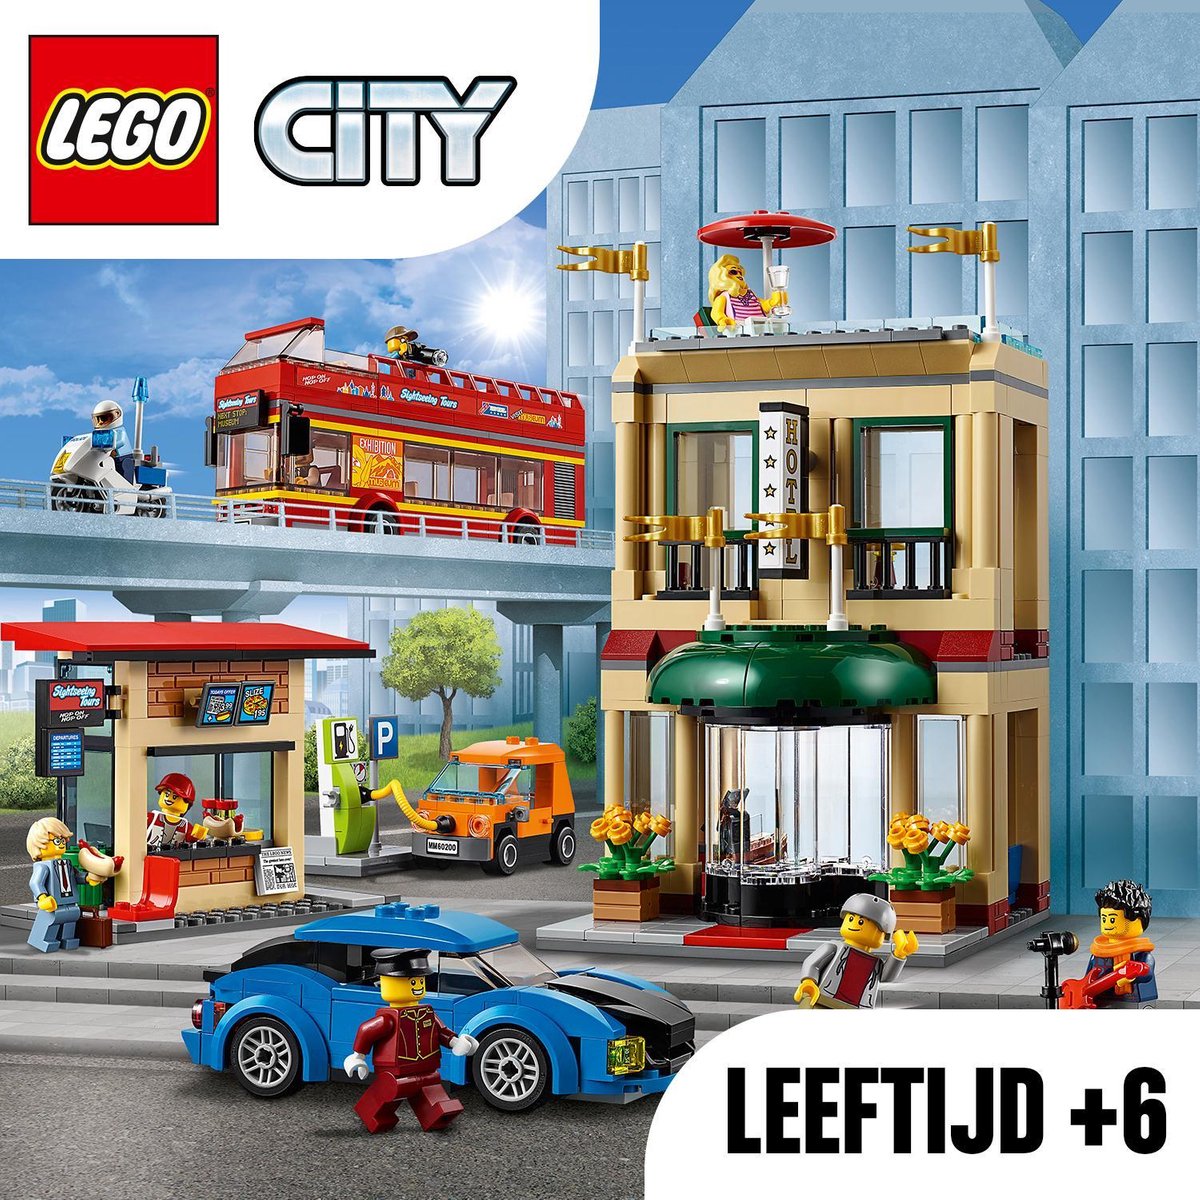 Lego - 60200 La Ville LEGO City - Briques Lego - Rue du Commerce